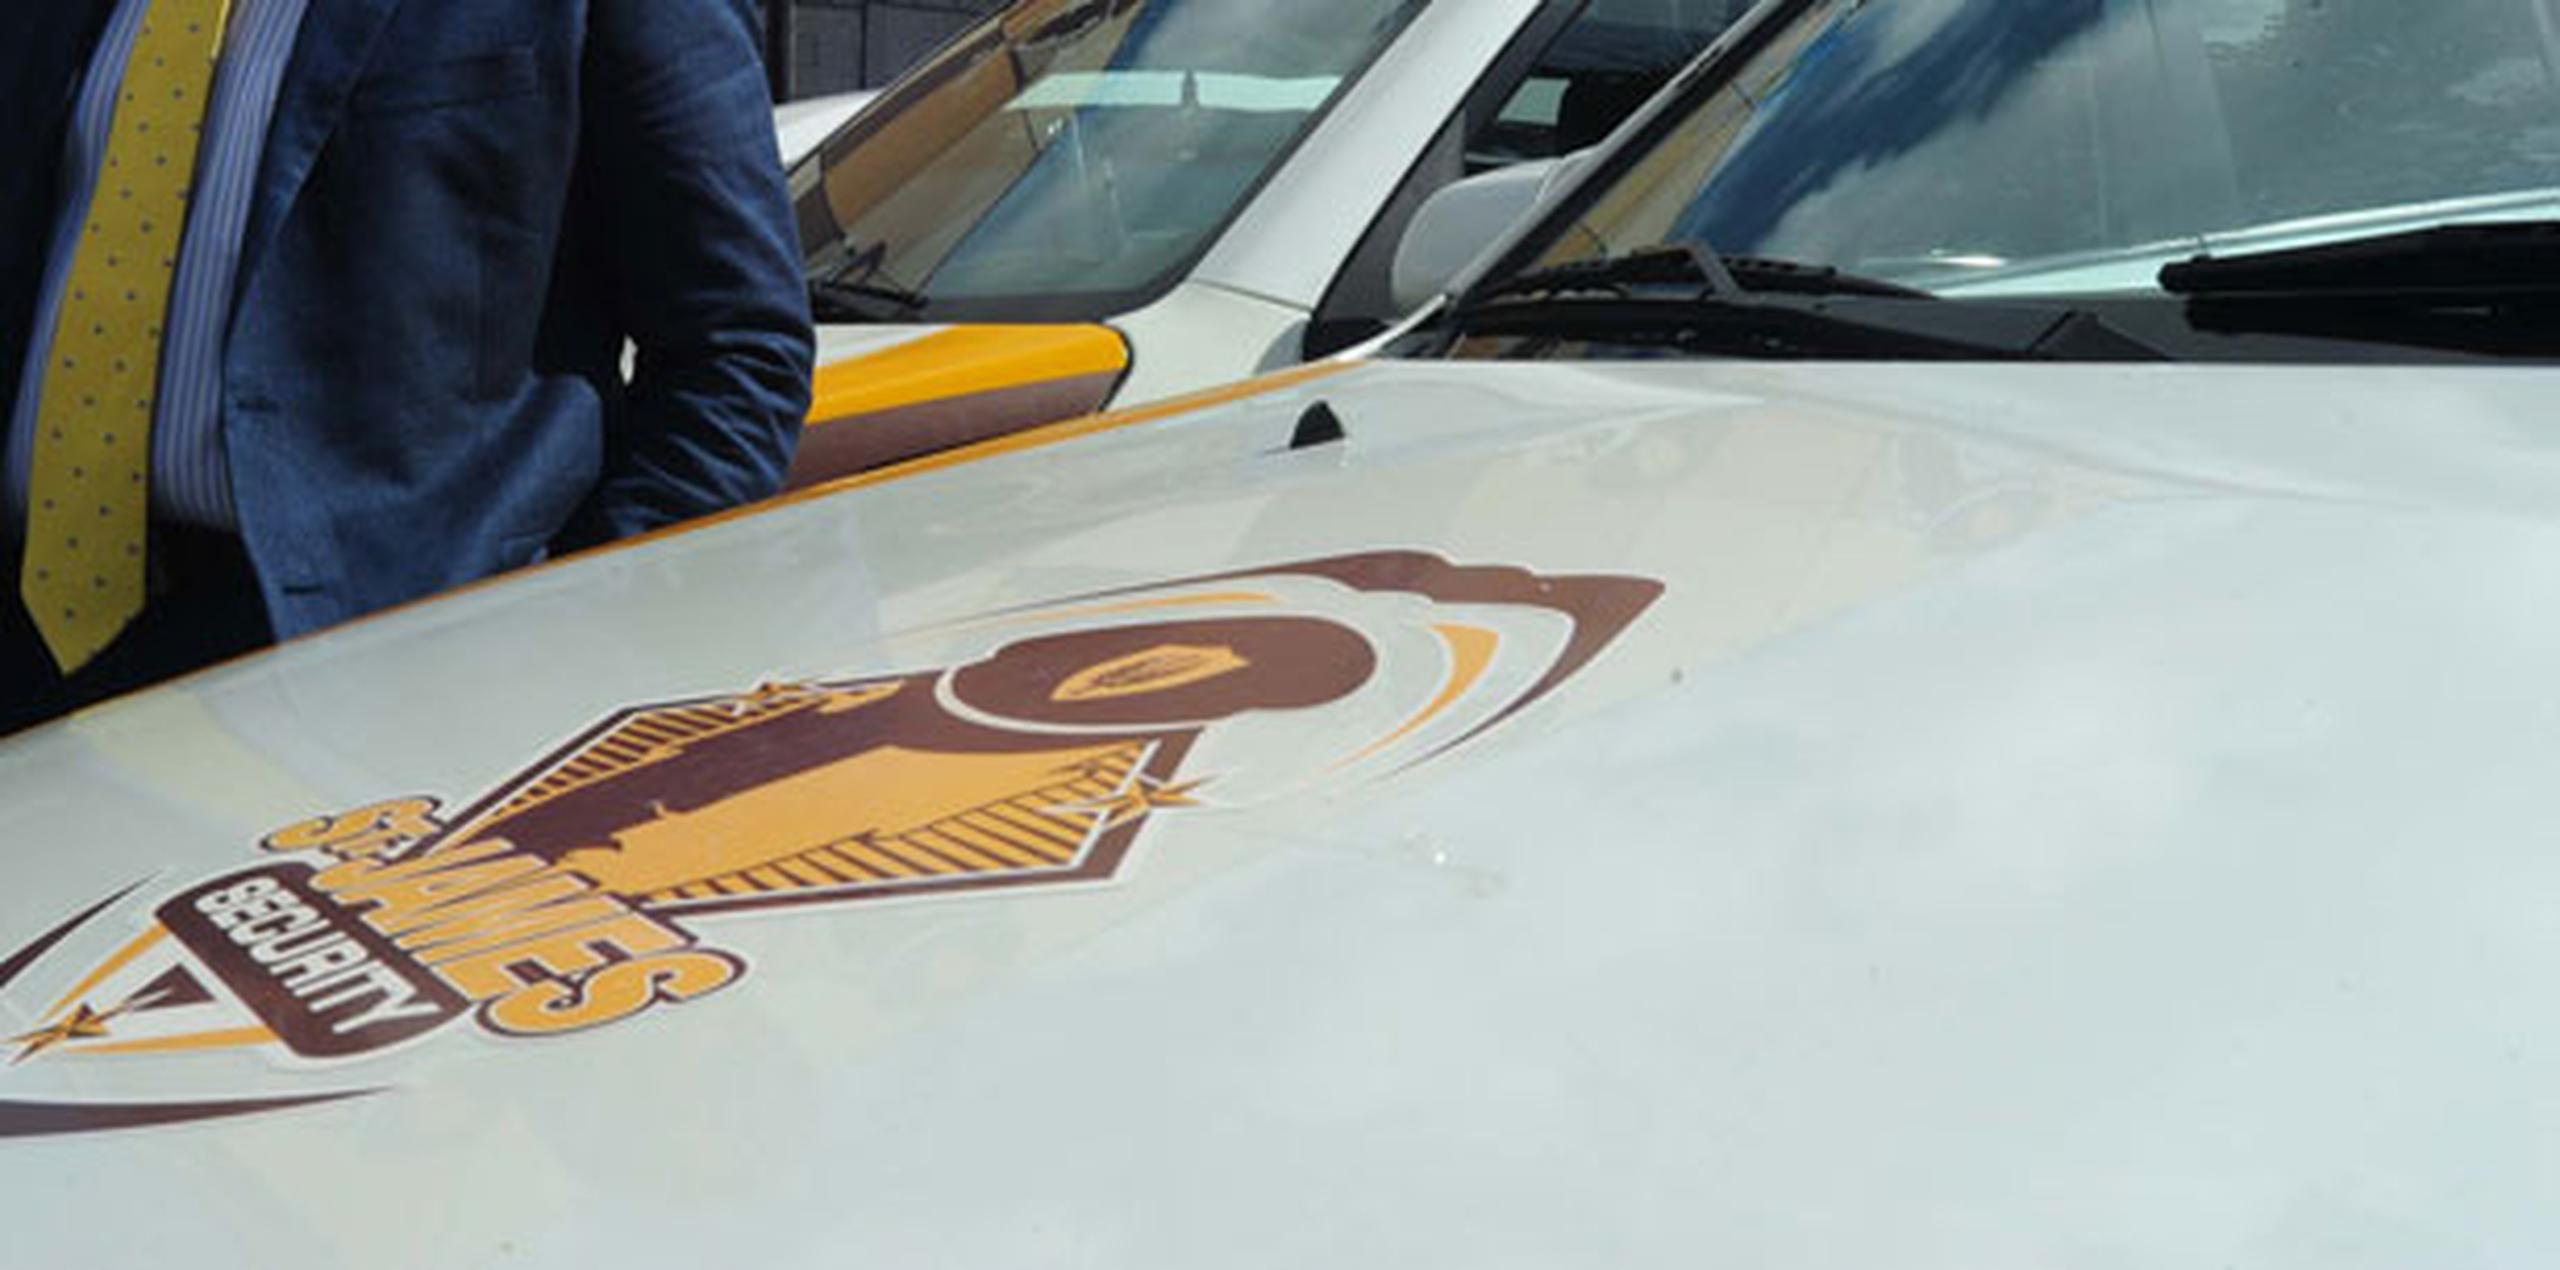 El vehículo robado está rotulado con el logo de la compañía Saint James. (Archivo)